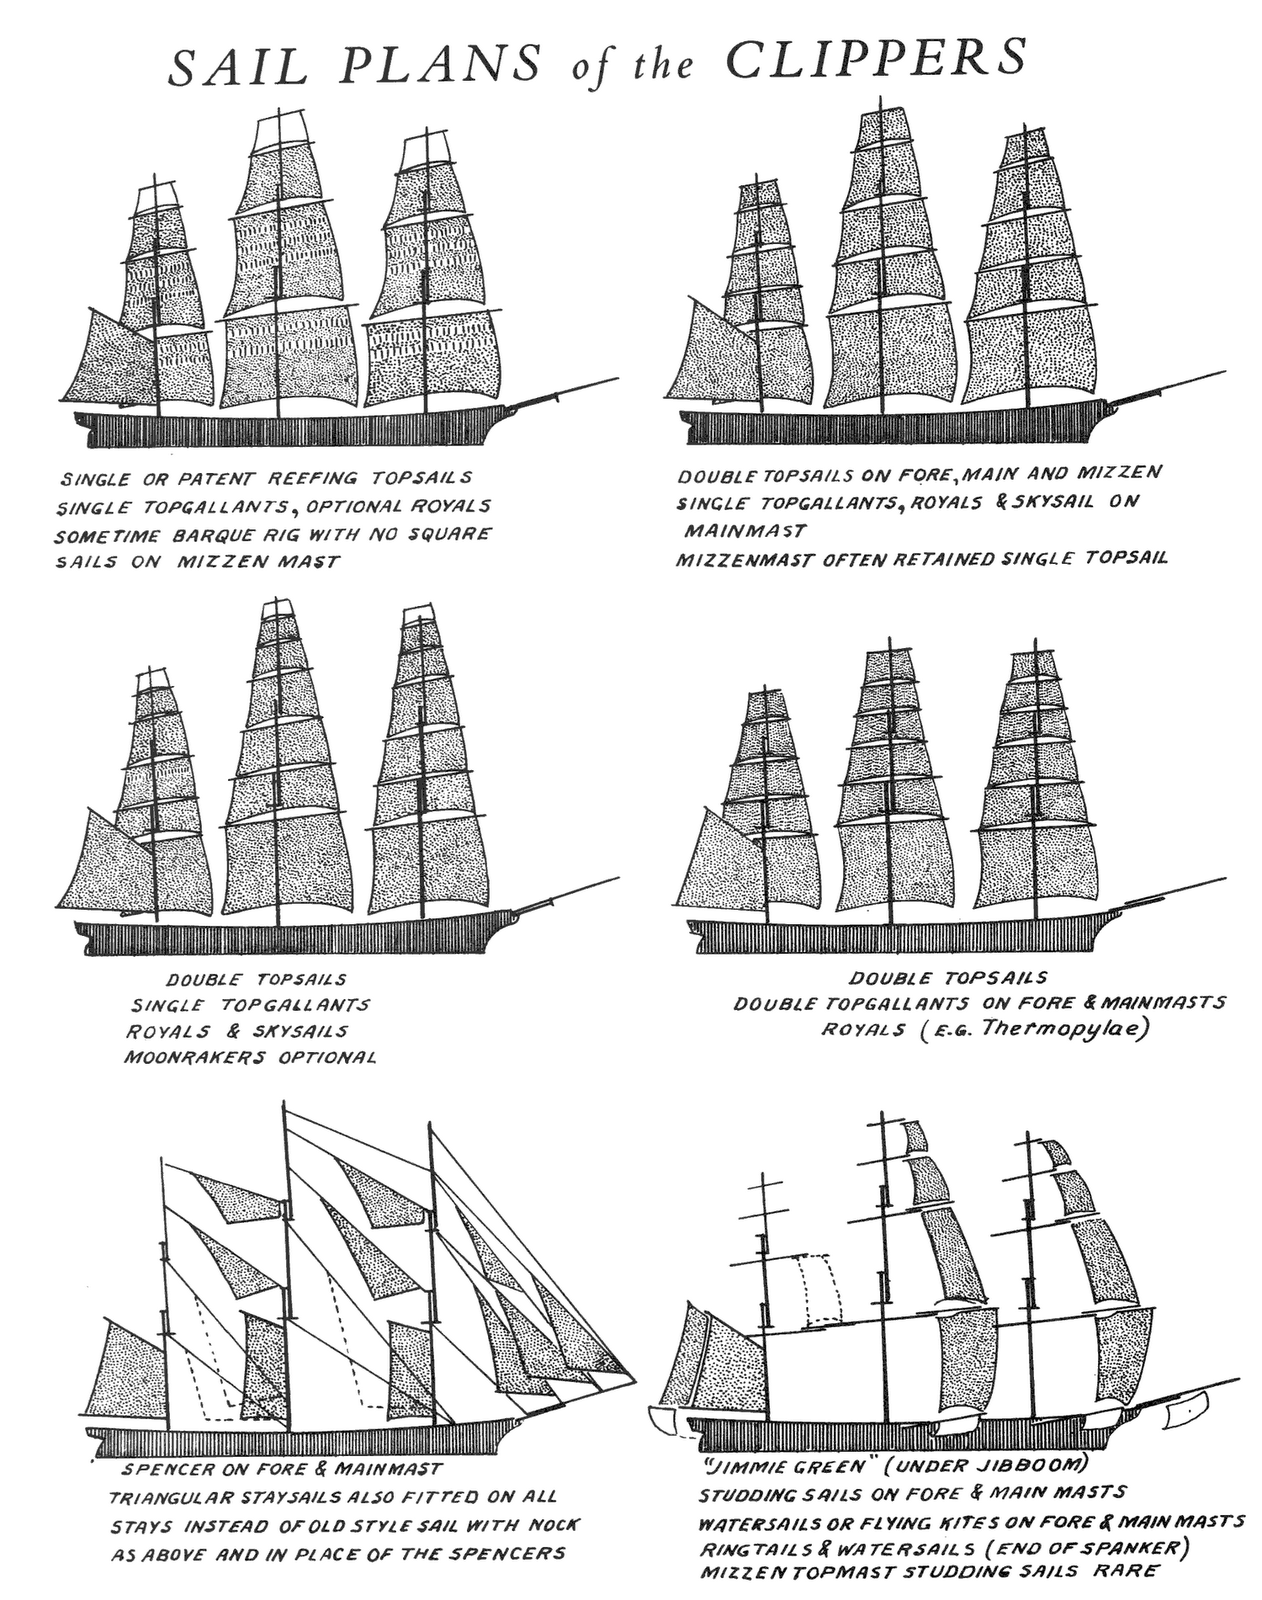 Тип парусного судна. Клипер судно типы парусных судов. Клипер судно типы парусных судов 18 век. Классификация парусных кораблей 17 века. Классификация парусных кораблей 18 века.